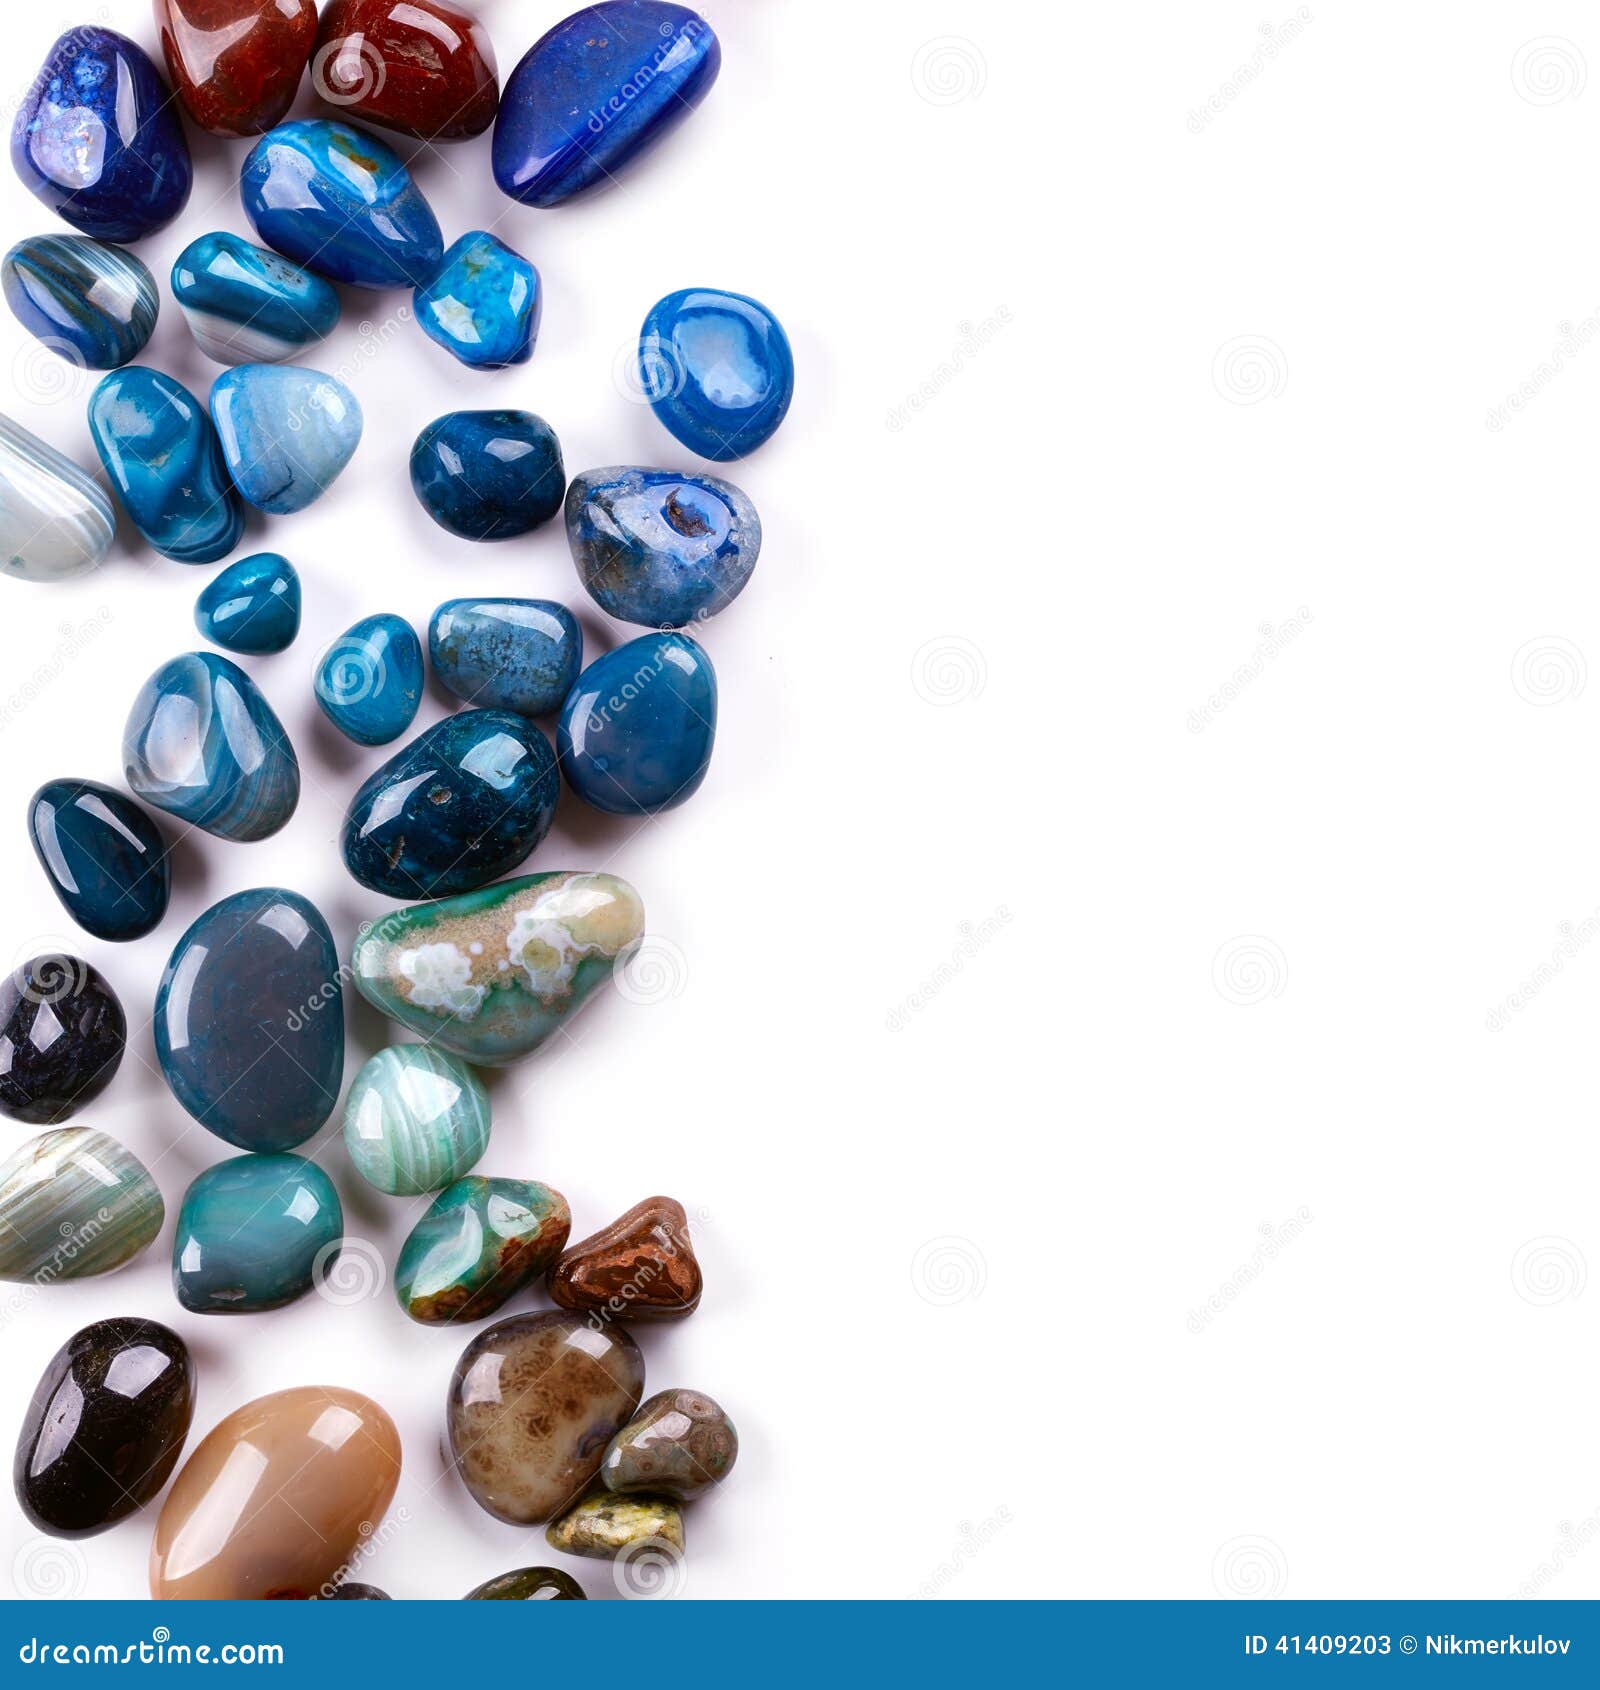 semiprecious stones